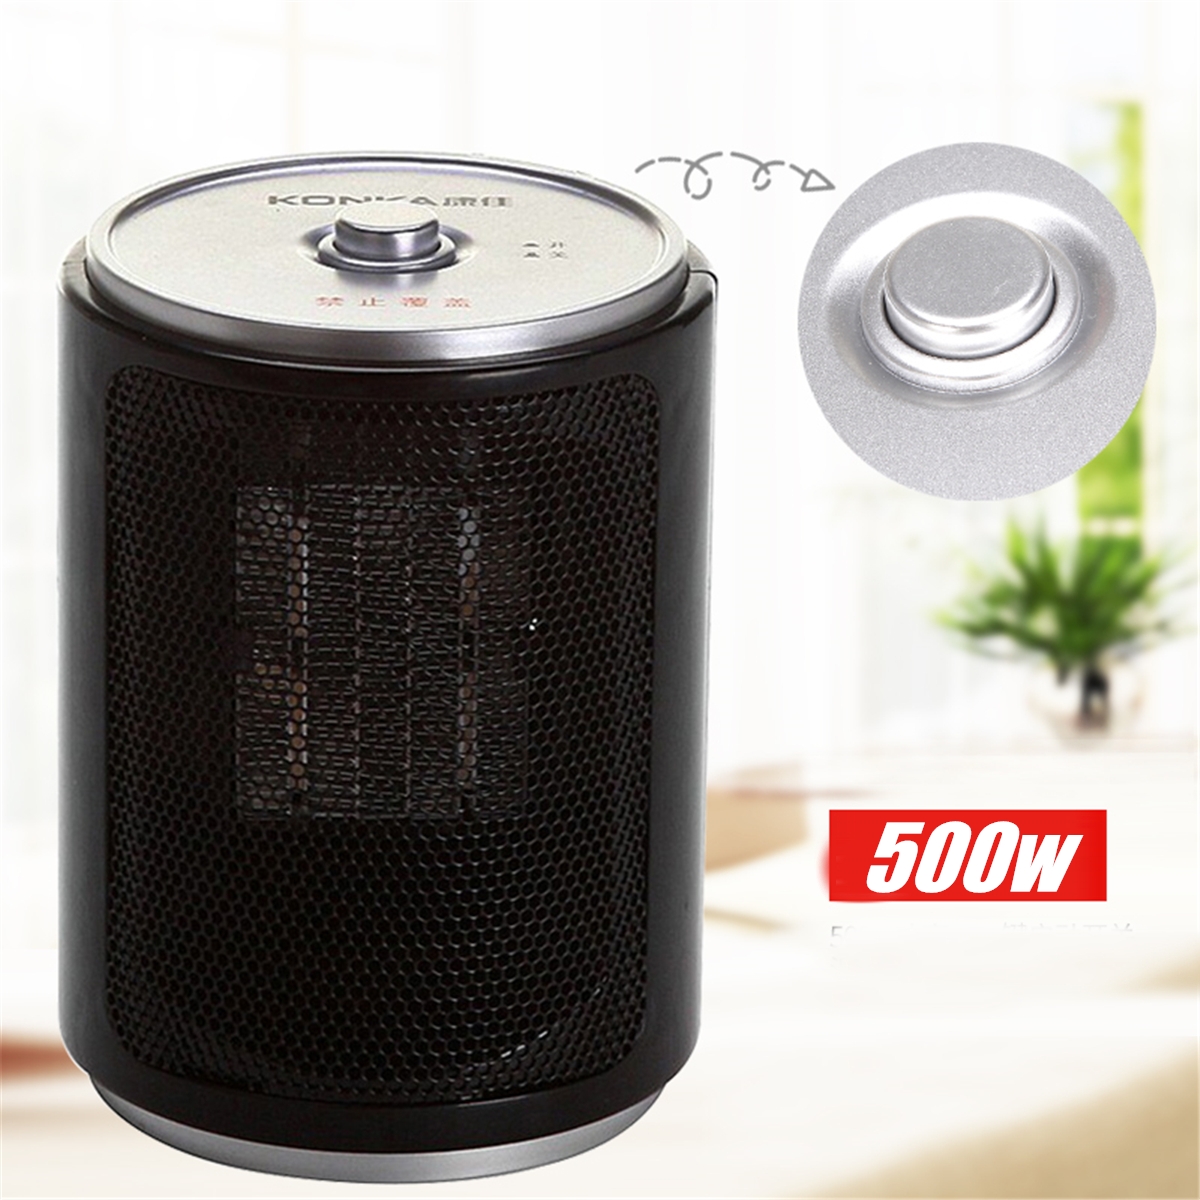 Portable-Electric-Desk-Mini-Air-Heater-Fan-Home-Warmer-Heating-Winter-Fan-1372394-2